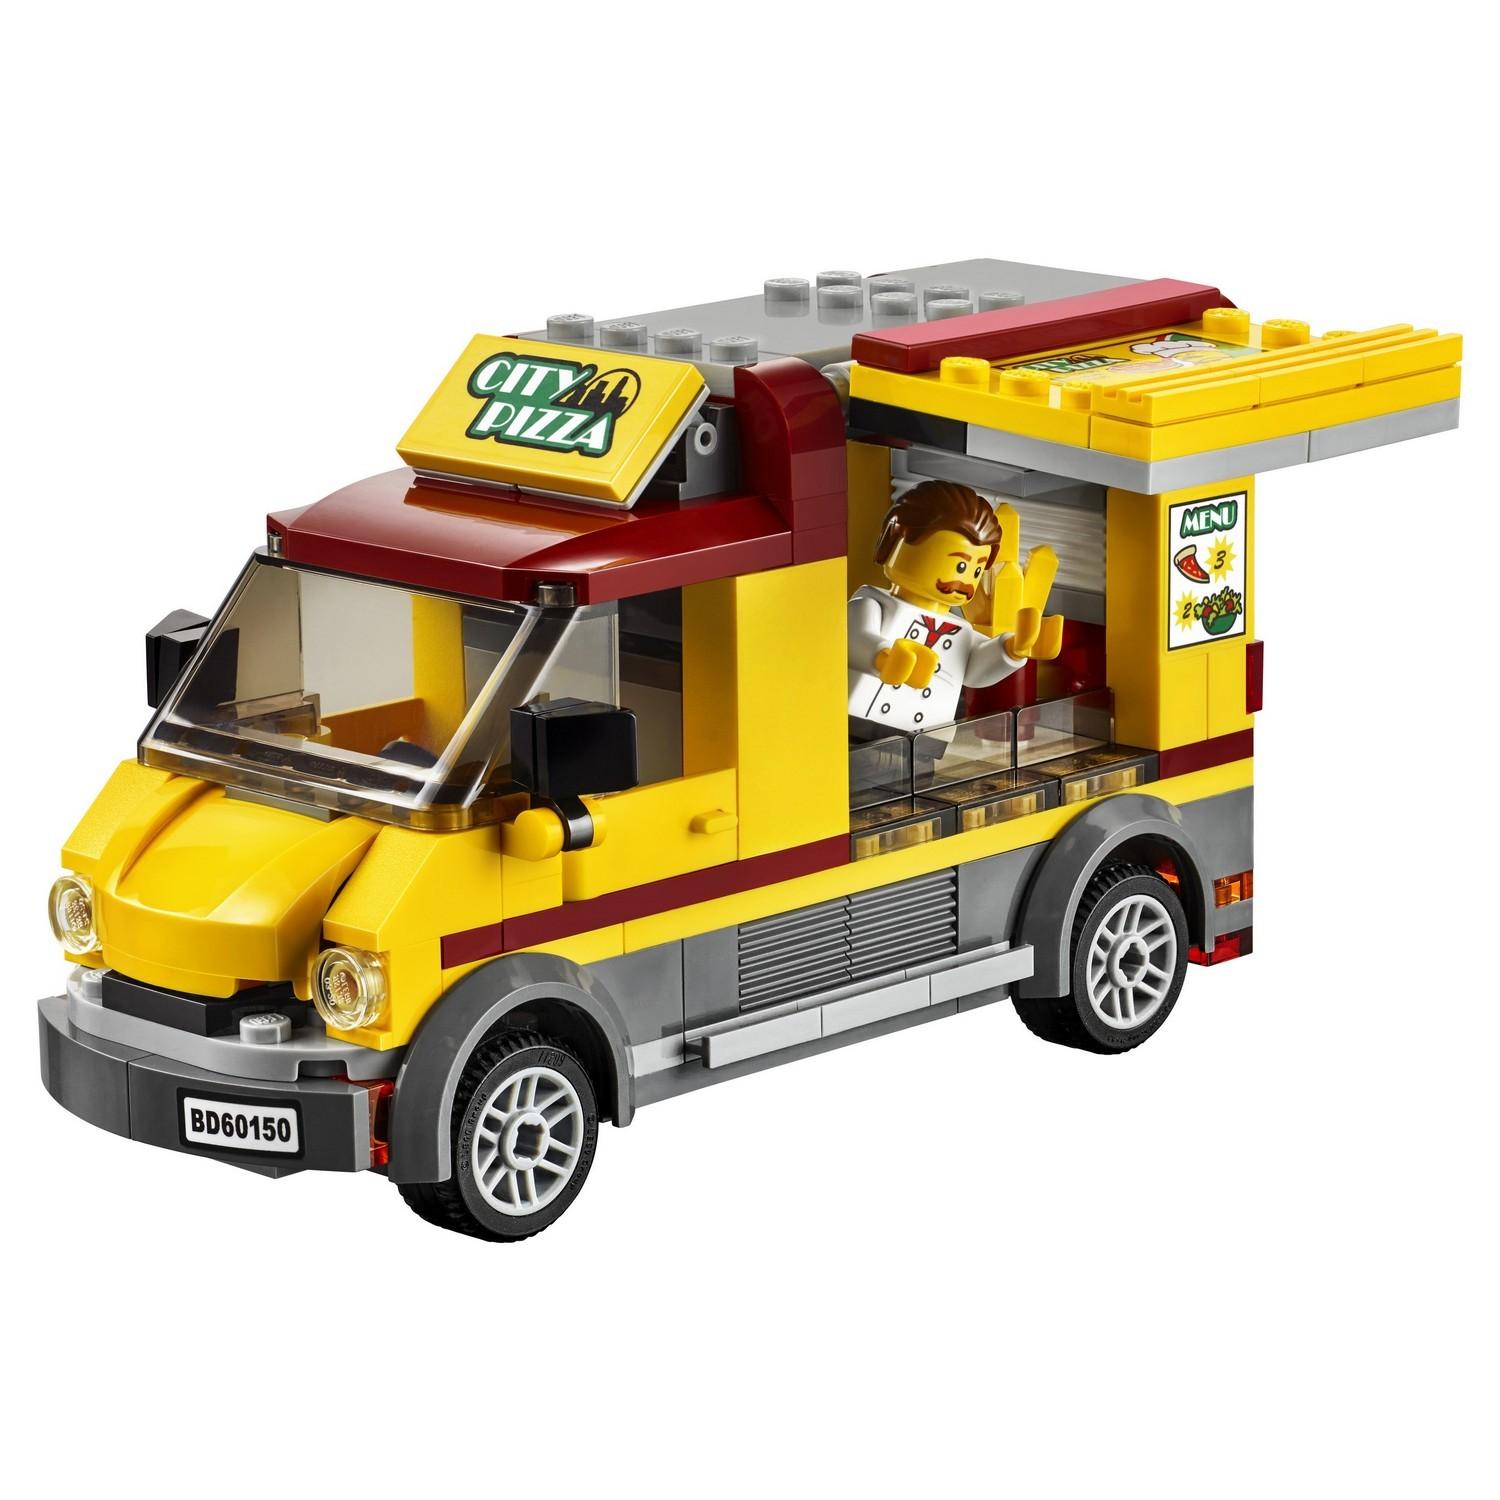 Lego City 60150 Фургон-пиццерия